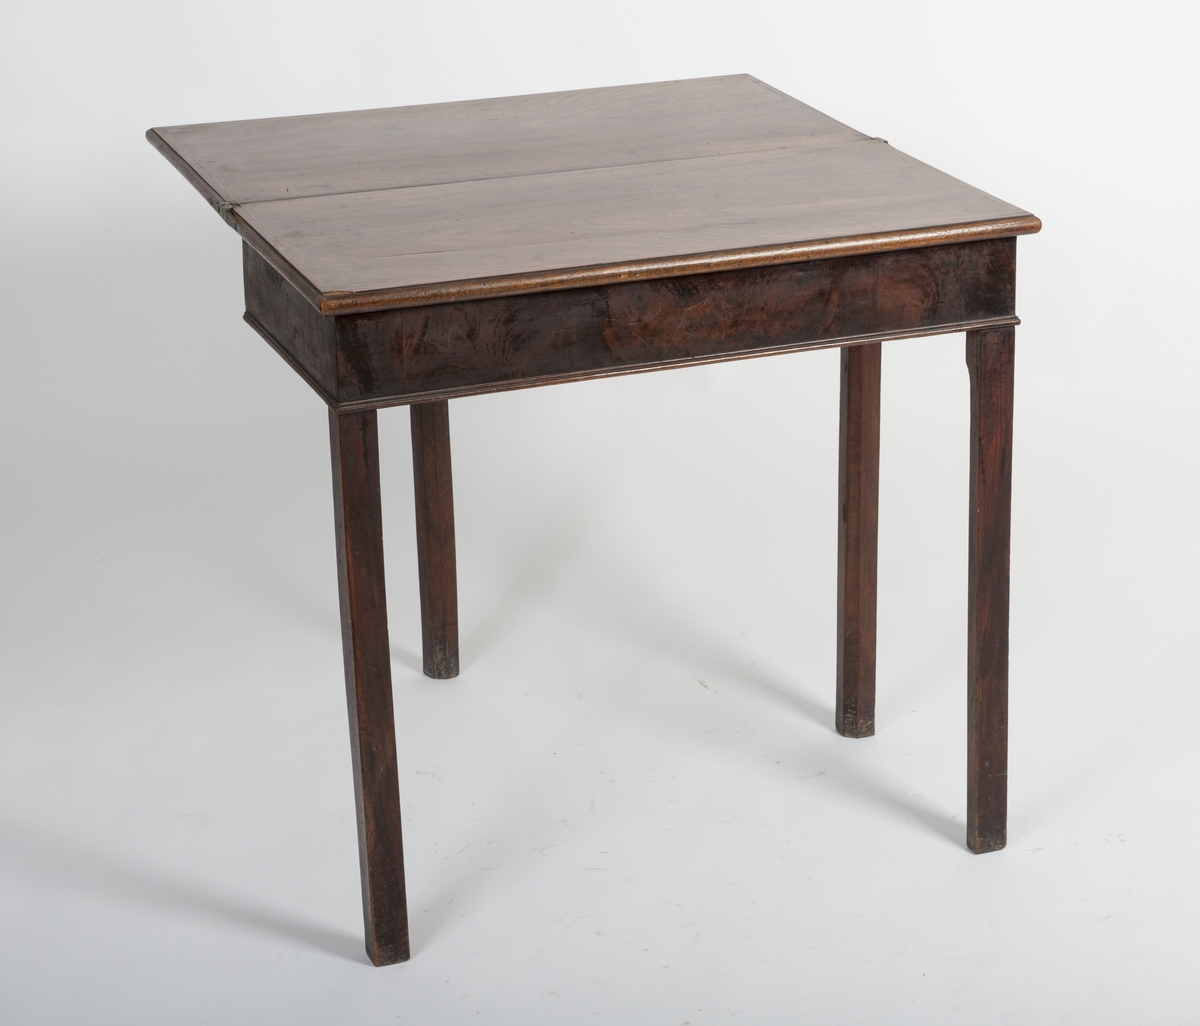 Rektangulært bord med todelt bordplate. Platen kan slås opp og bordplaten får en kvadratisk form. Oppslått bordplaten står på et uttrukket ben. Båndintarsia på bordplaten.